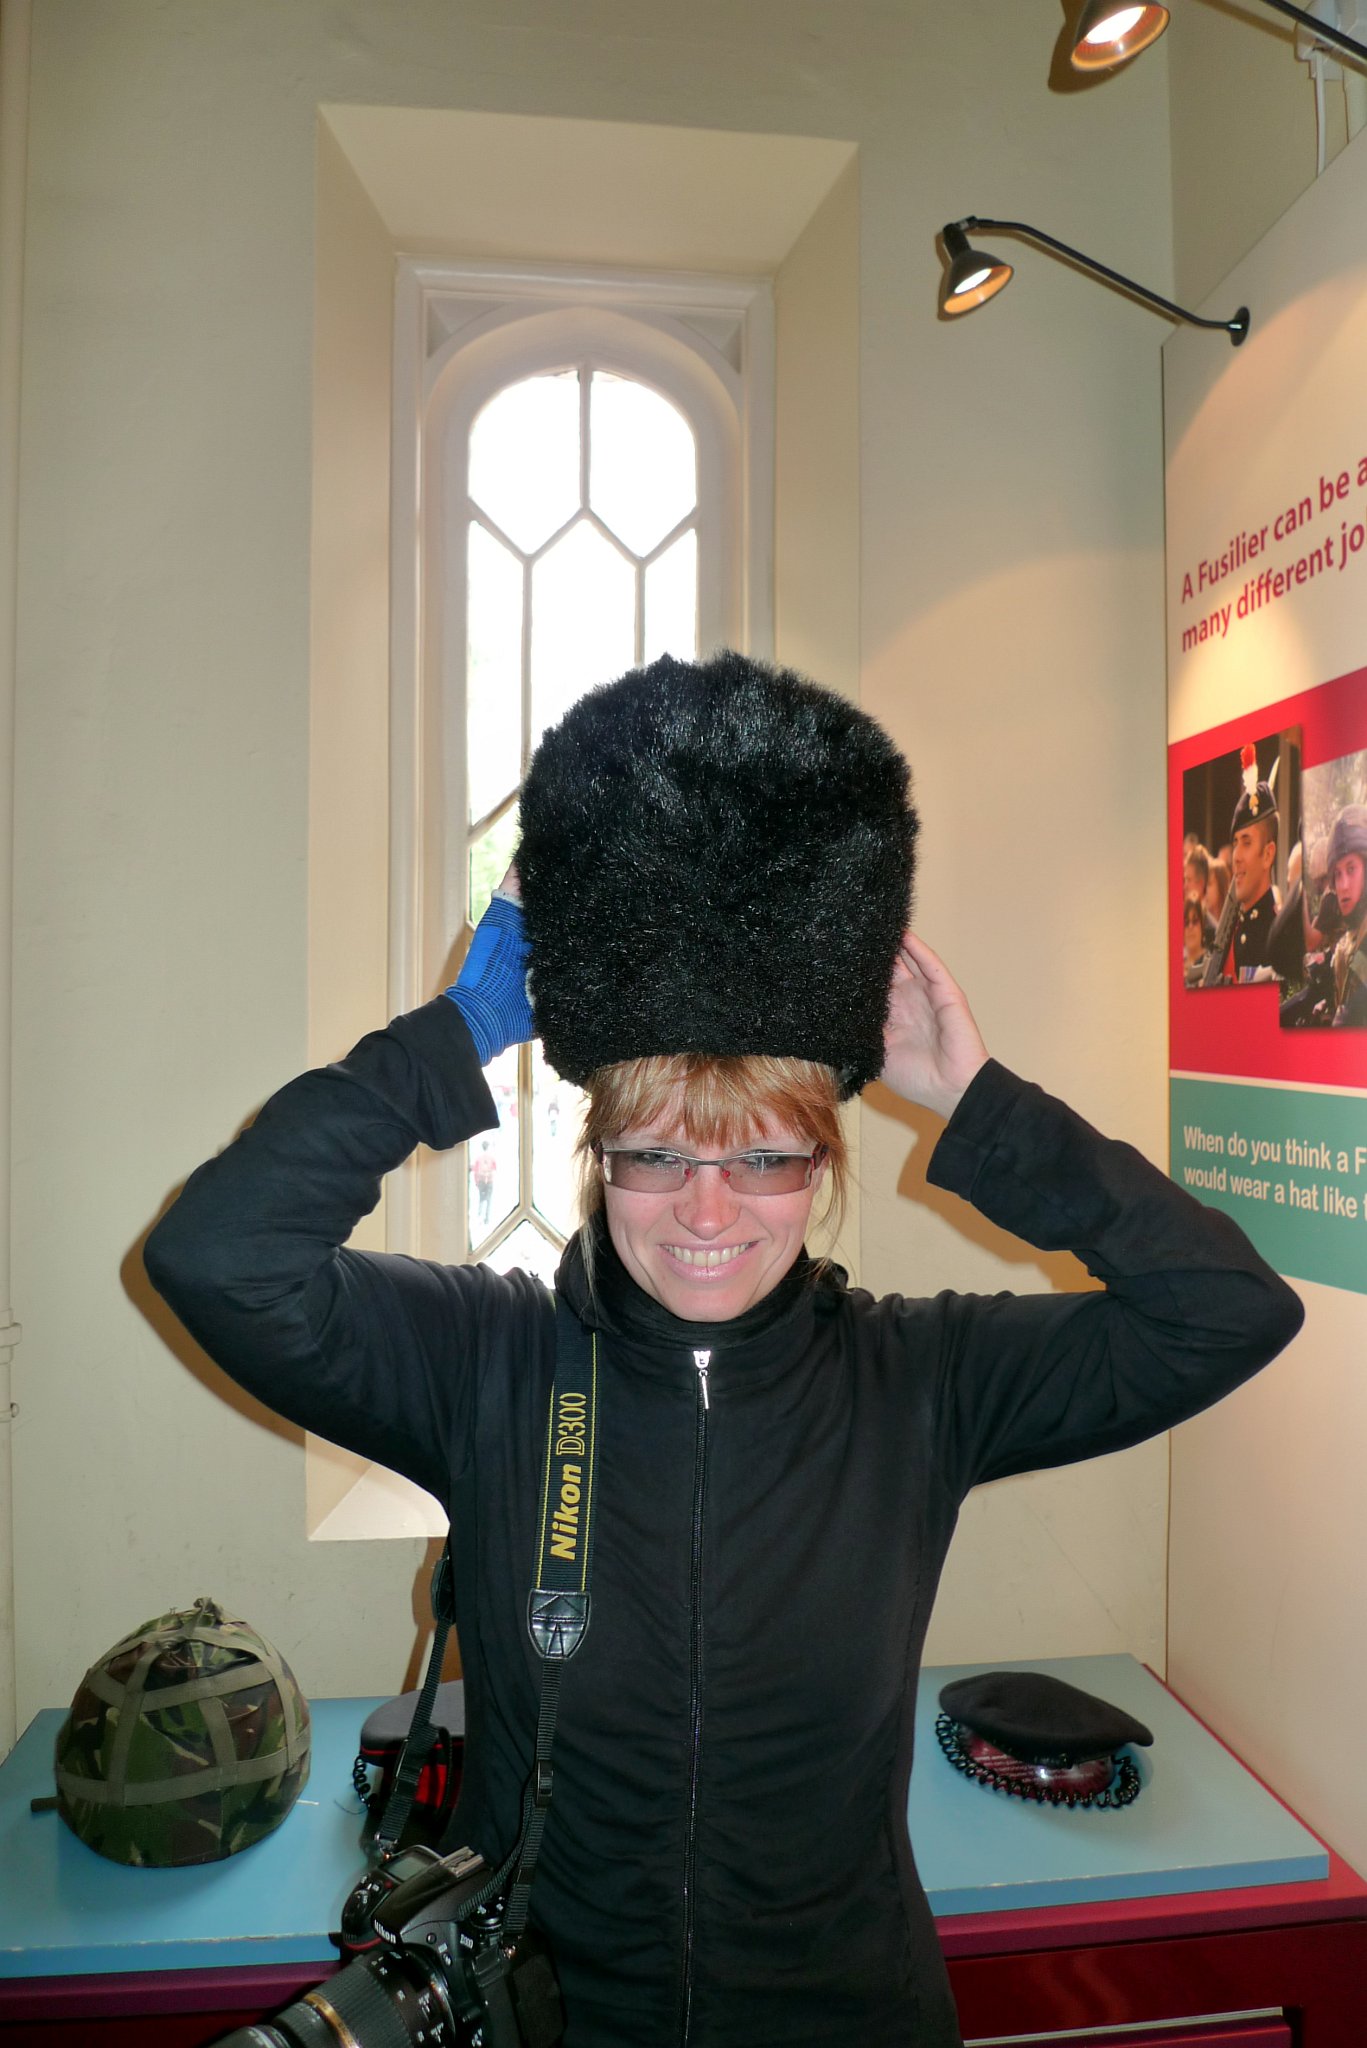 P1070541_1.jpg - V Regimental Museum of the Royal Fusiliers jsem si vyzkoušela, jaké to je mít na hlavě čepici gardy. Chtělo by to ale rozpustit vlasy, culík mi bránil, nasadit ji na hlavu.